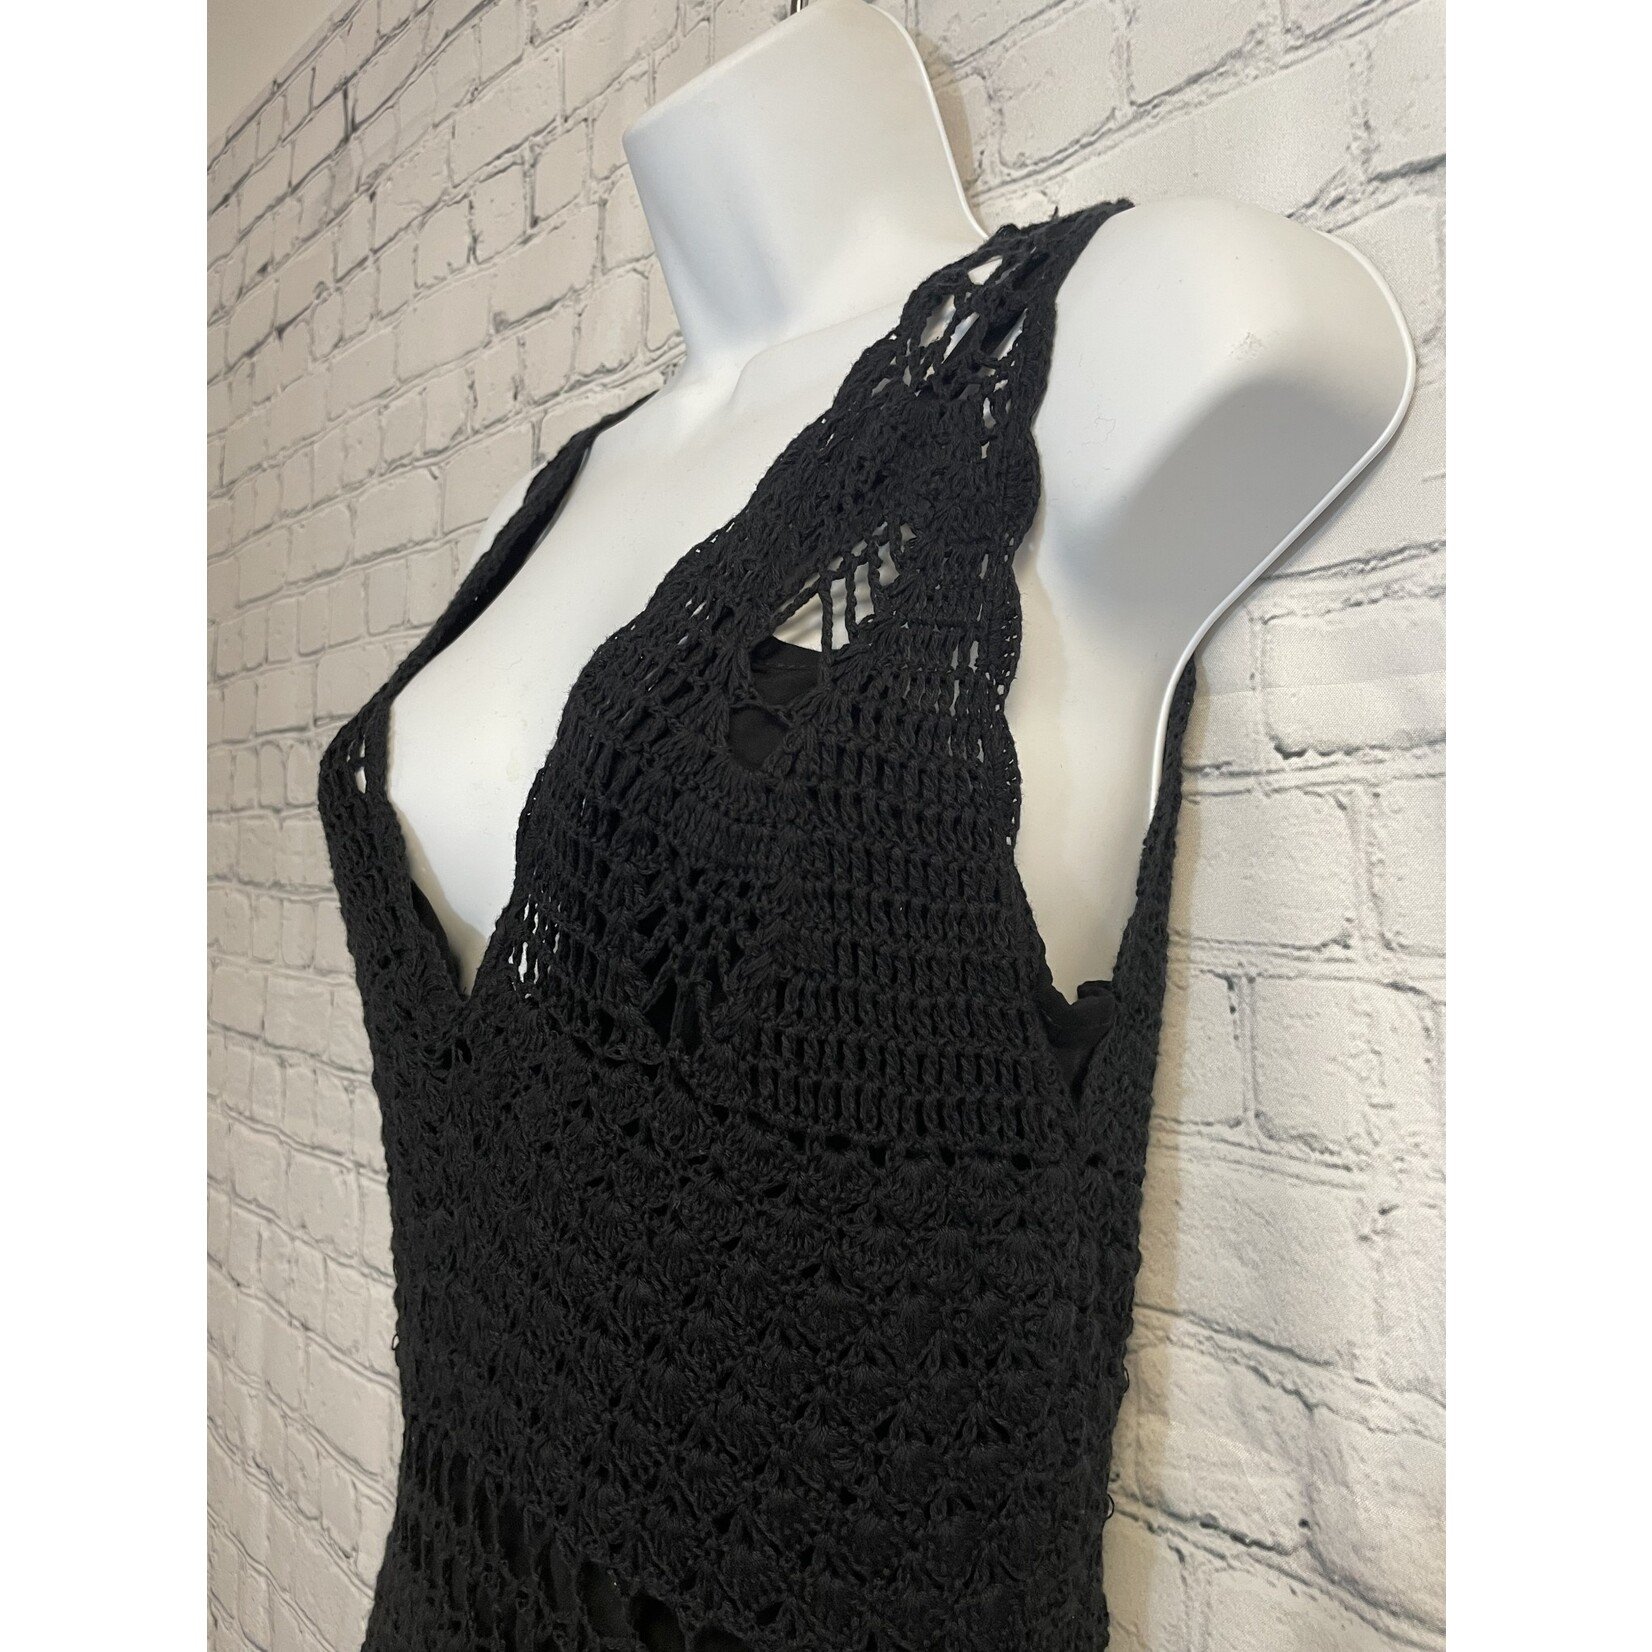 Cleobella, Black, Knit, Dress, NWT, MSRP $348